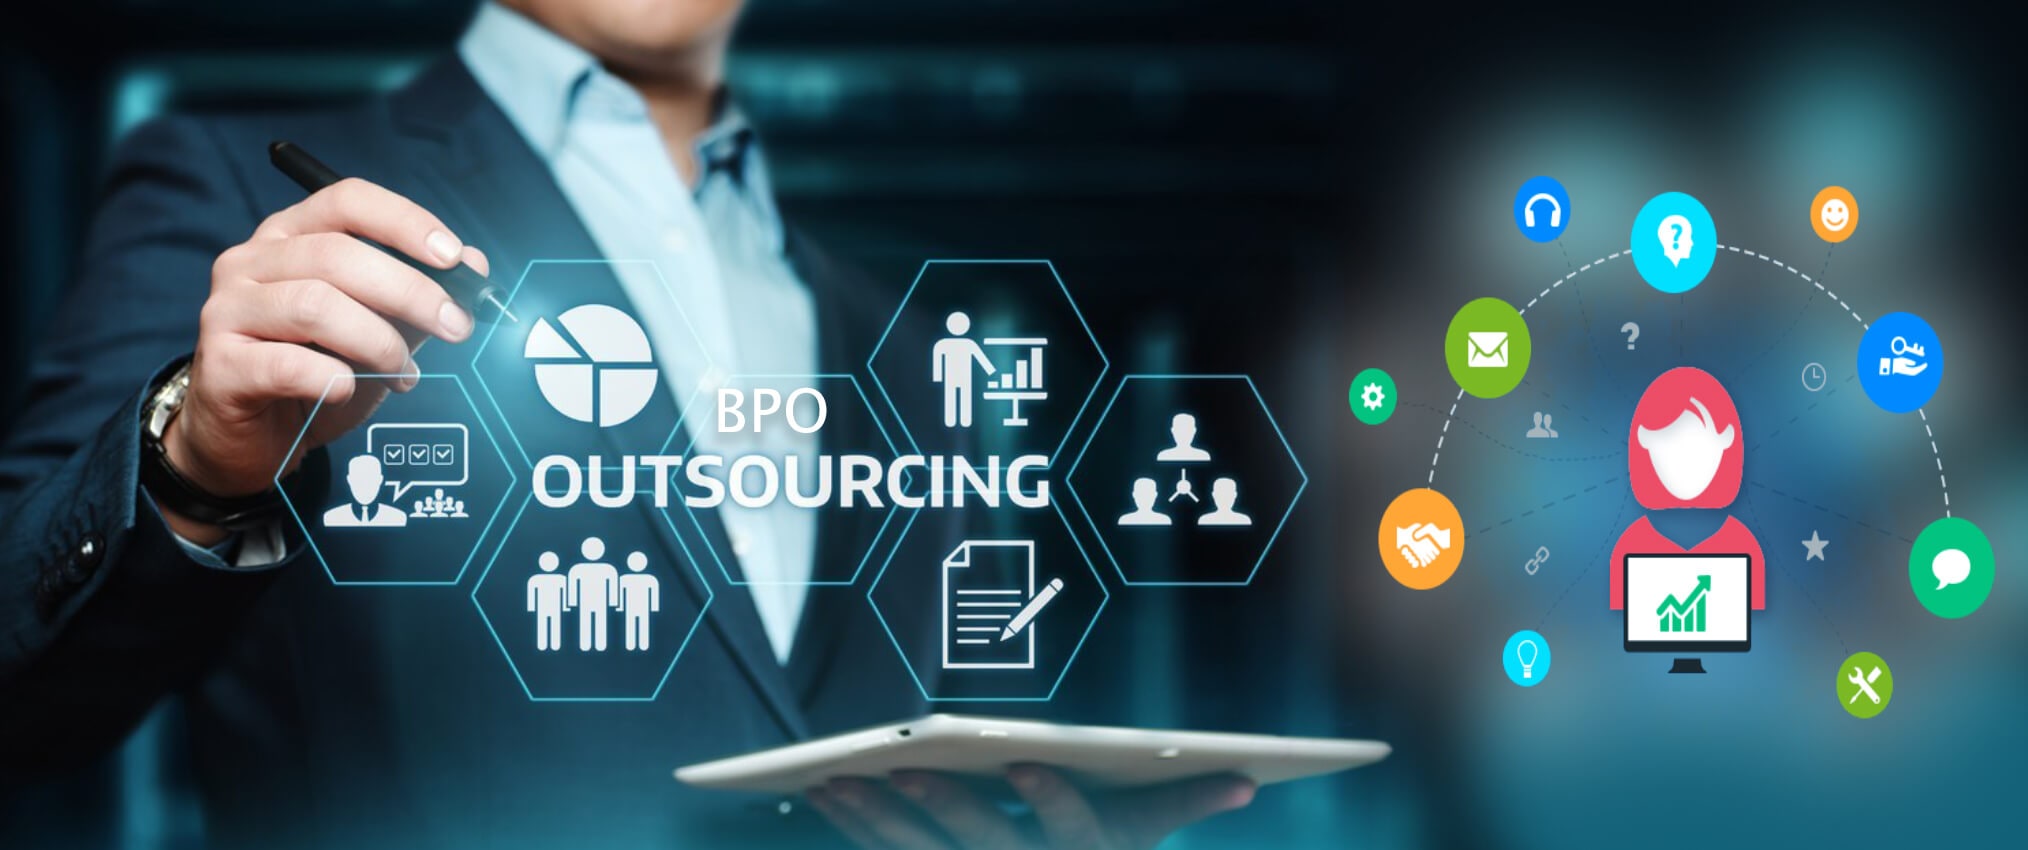 outsourcing-bpo.jpg